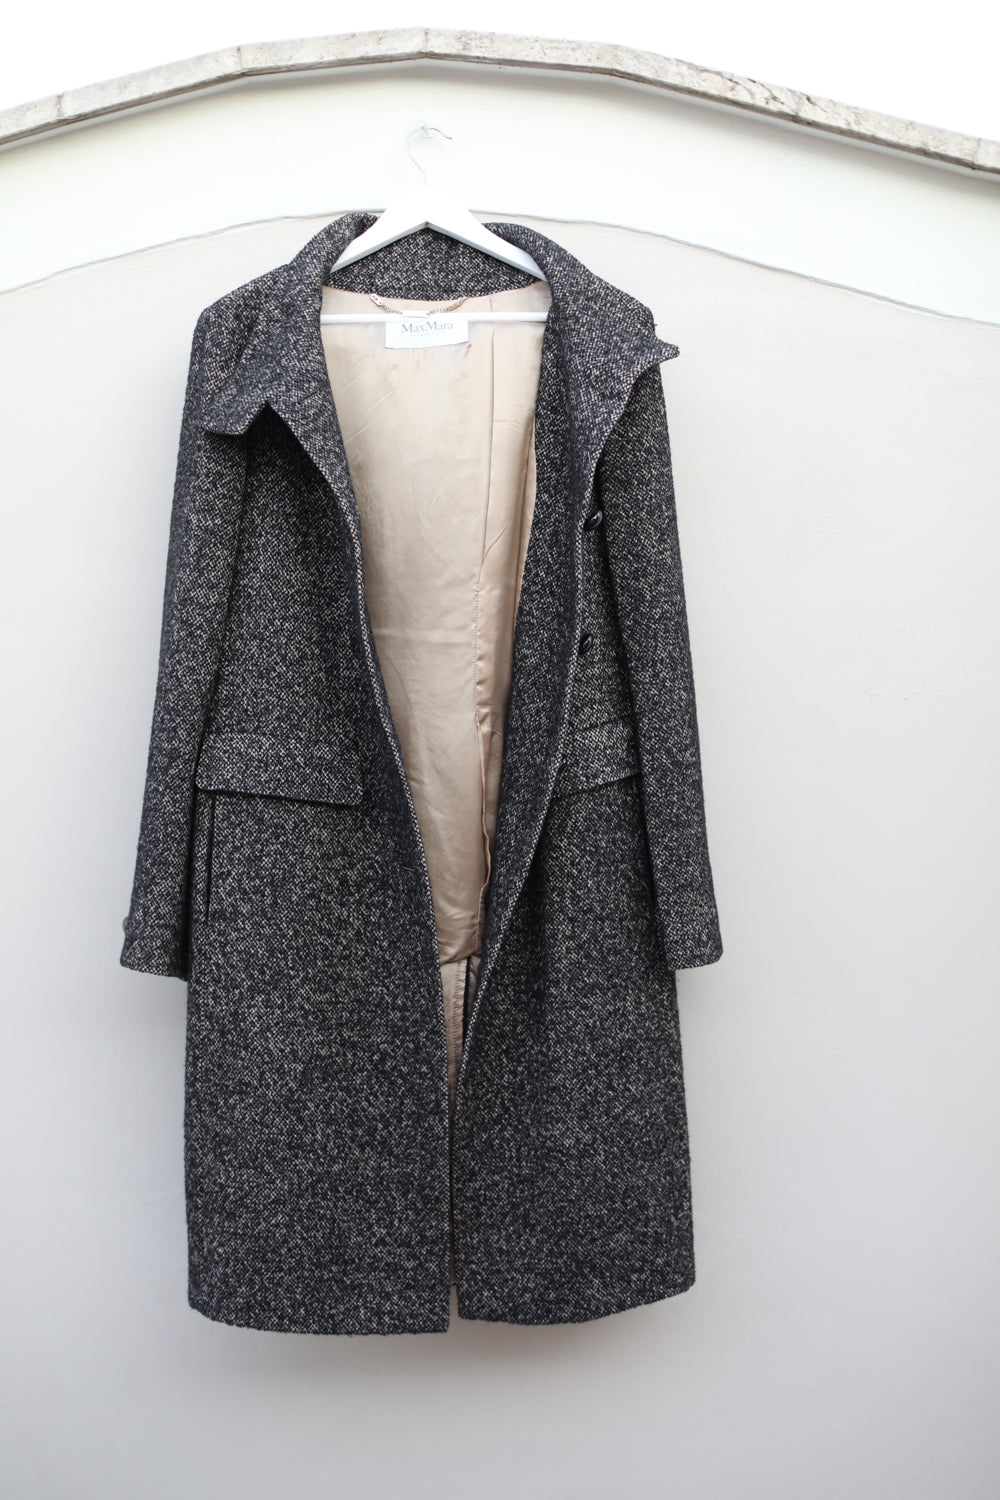 Vintage Max Mara Dark Brown Tweed Coat